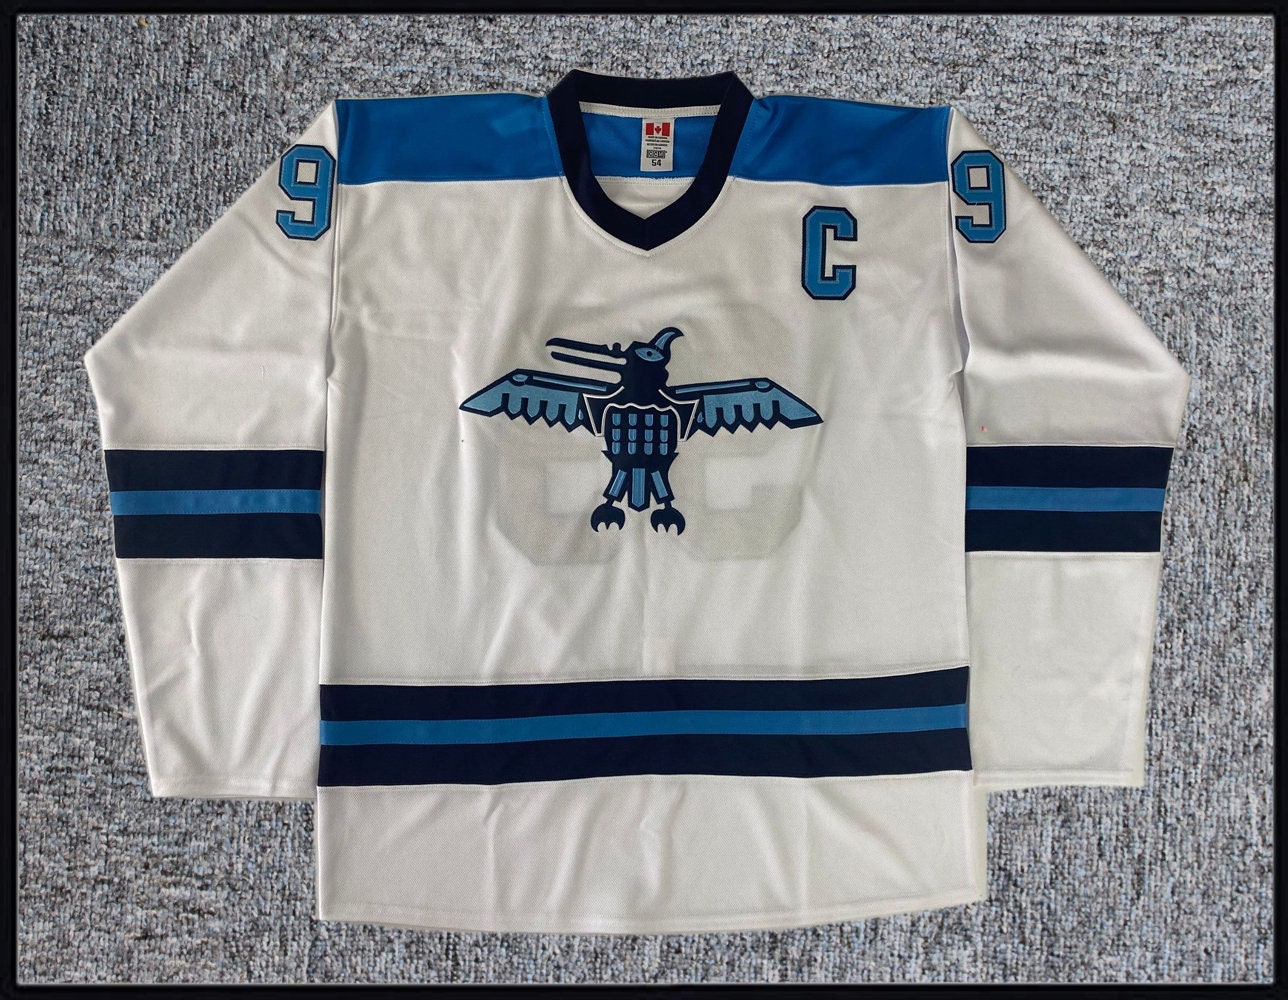 Wayne Gretzky Vintage St Louis Blues CCM Replica Hockey Jersey (L)